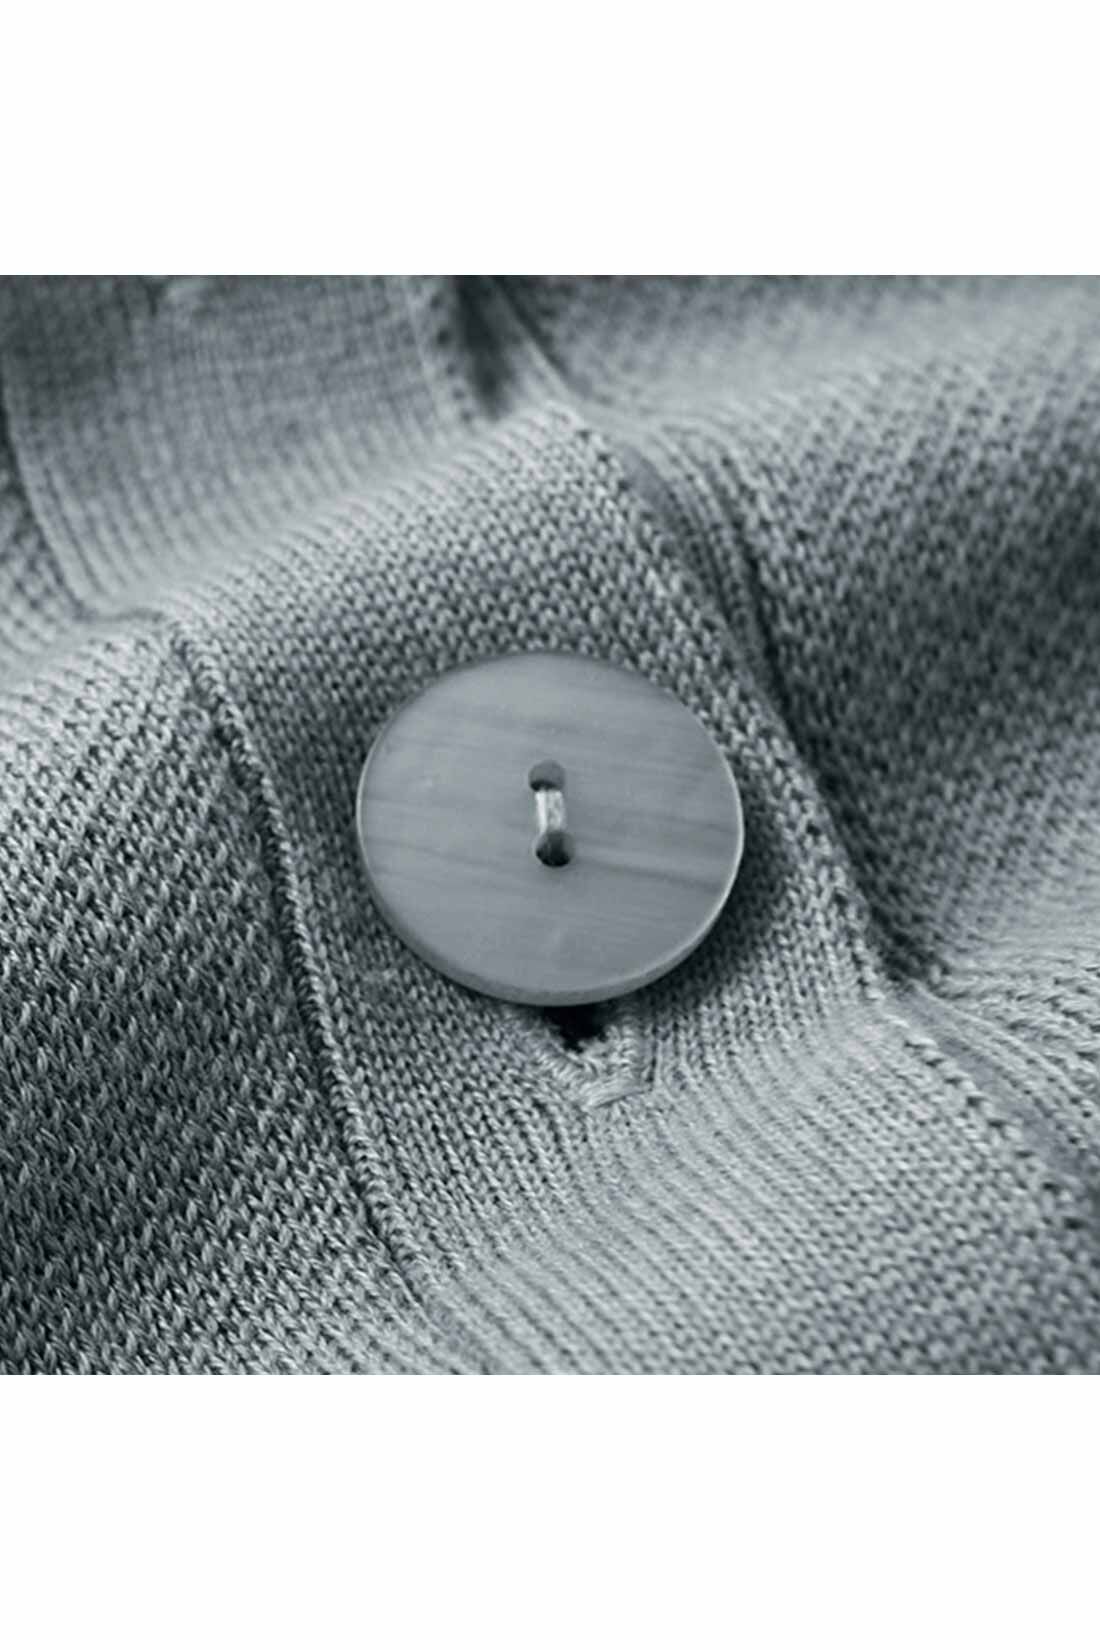 Real Stock|リブ イン コンフォート　しっかりしたハーフミラノ編みのニットベストワンピース〈ブルー〉|安心感のある厚めの編み地。スリットにはおしゃれな同色のシェル調ボタン。 ※お届けするカラーとは異なります。